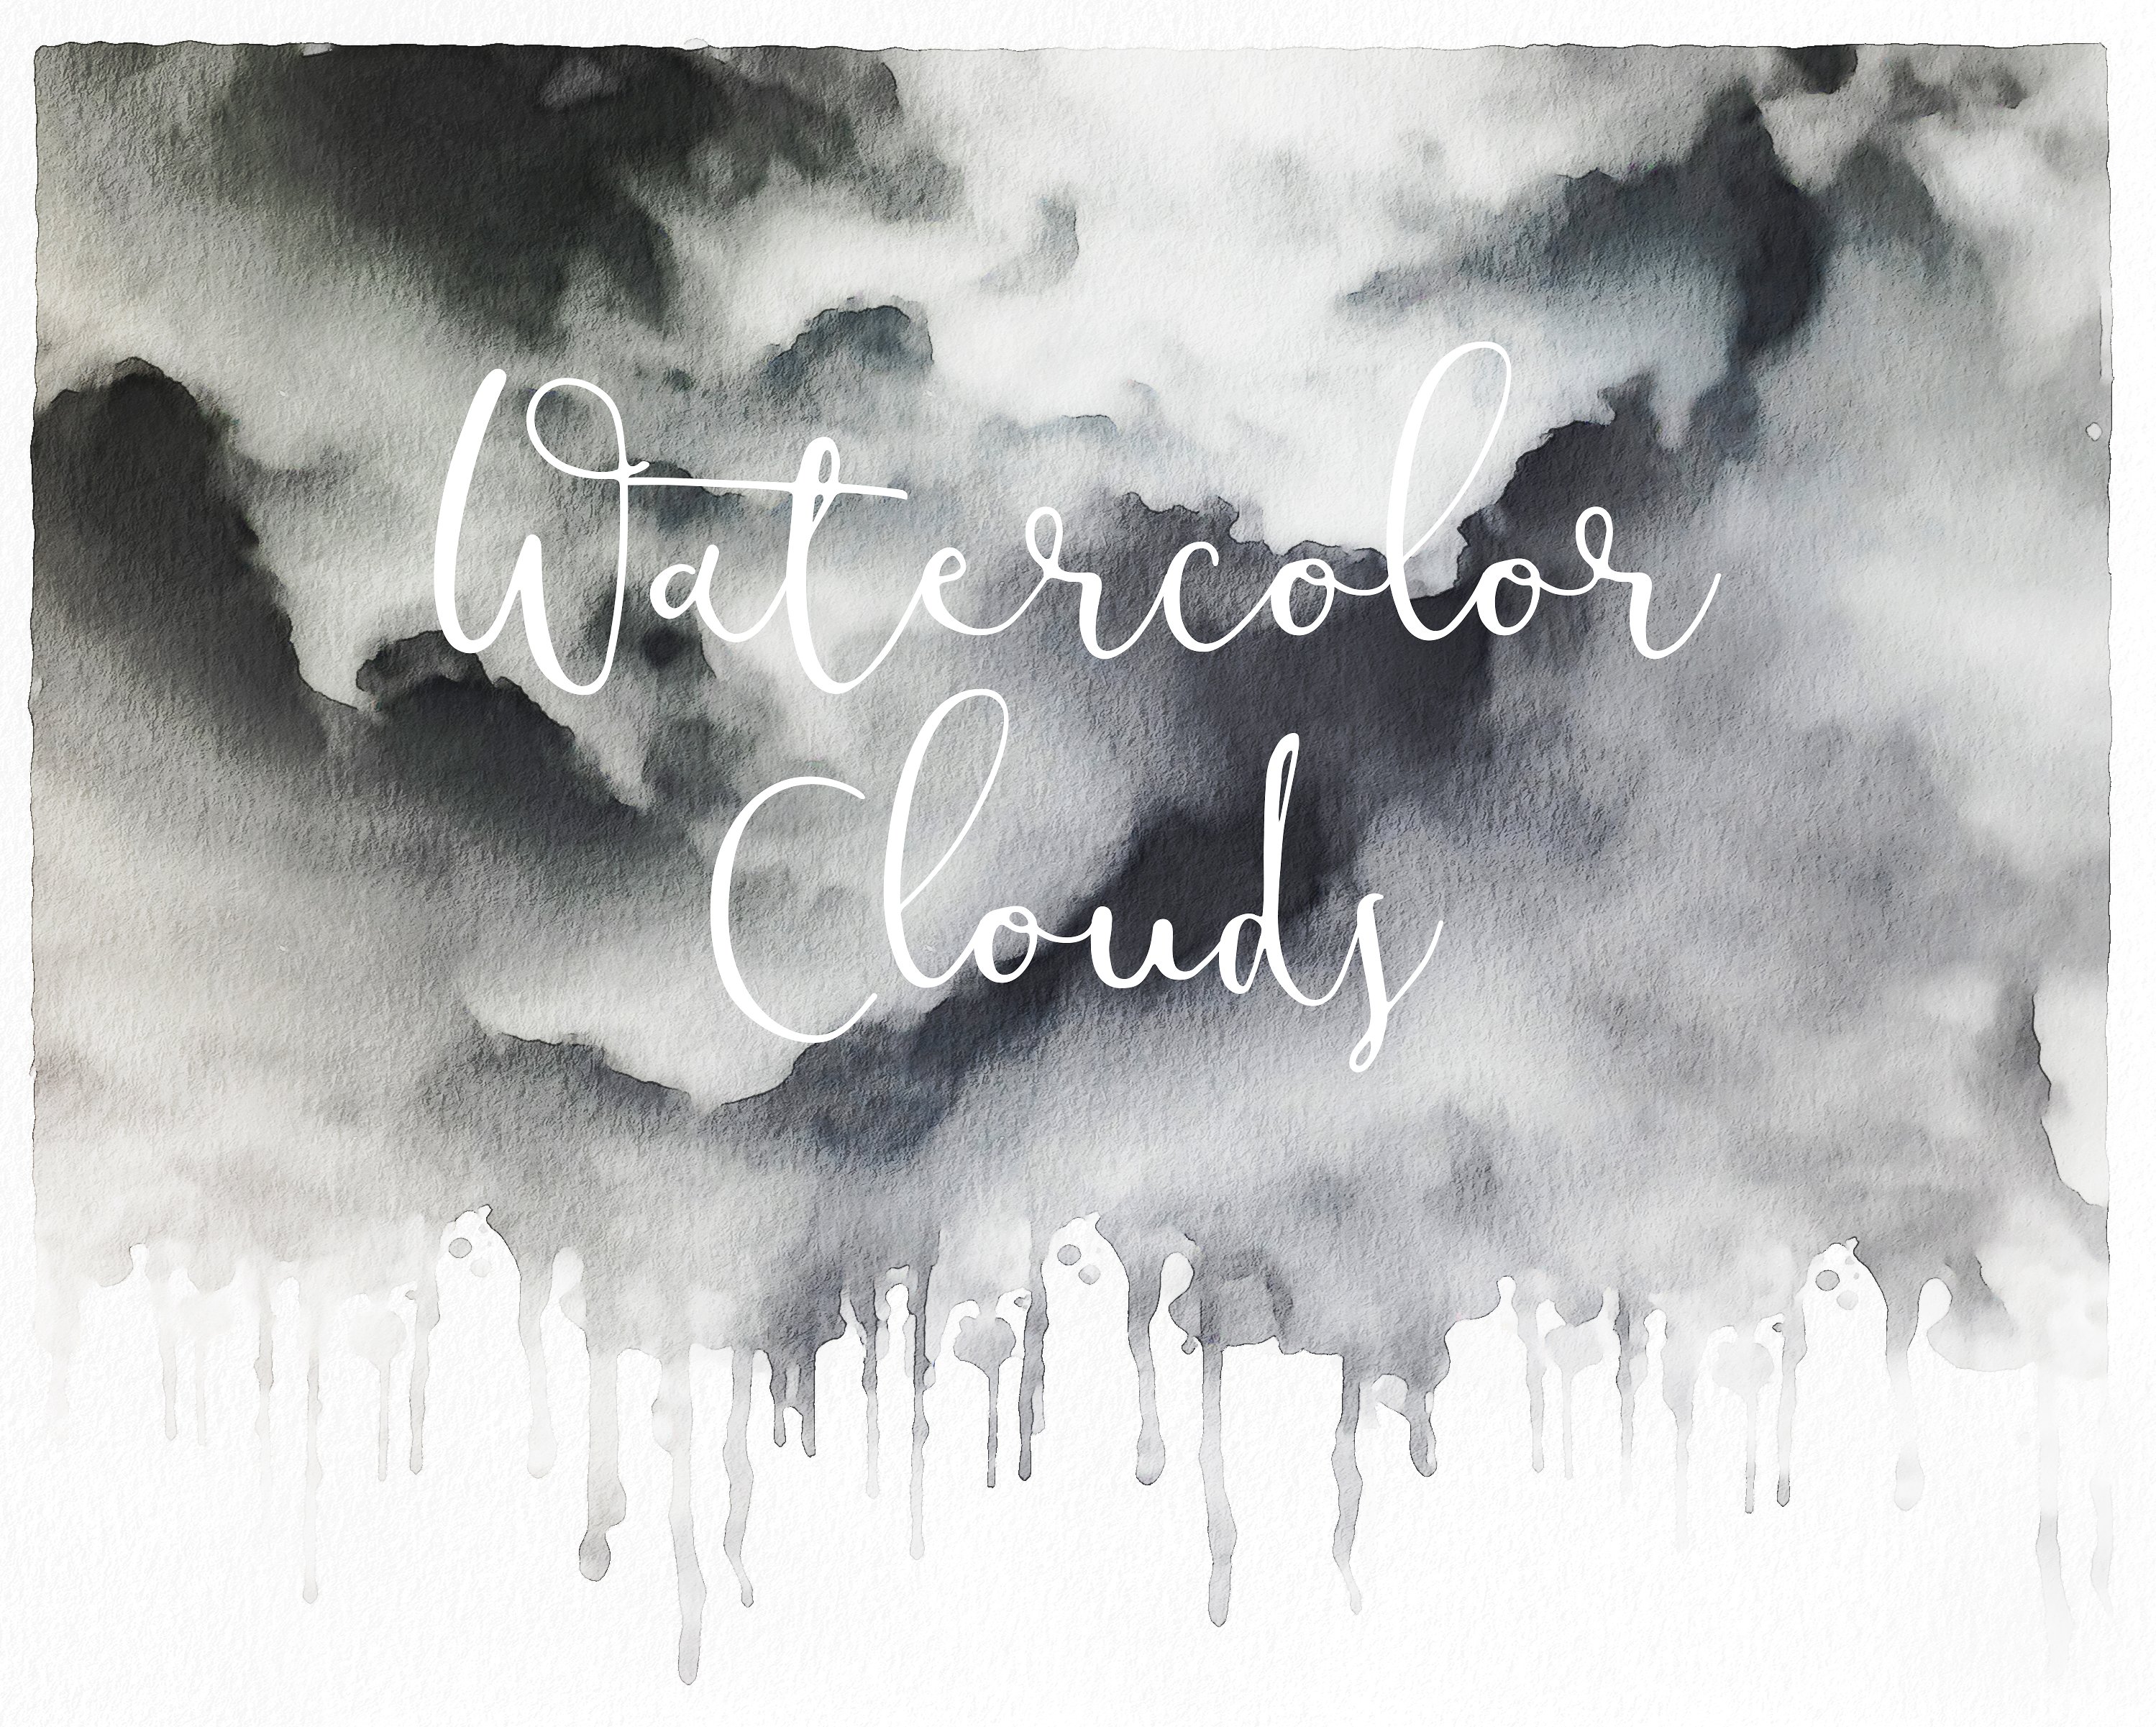 7高分辨率水彩云彩纹理 7 High-Resolution Watercolor Clouds Textures插图